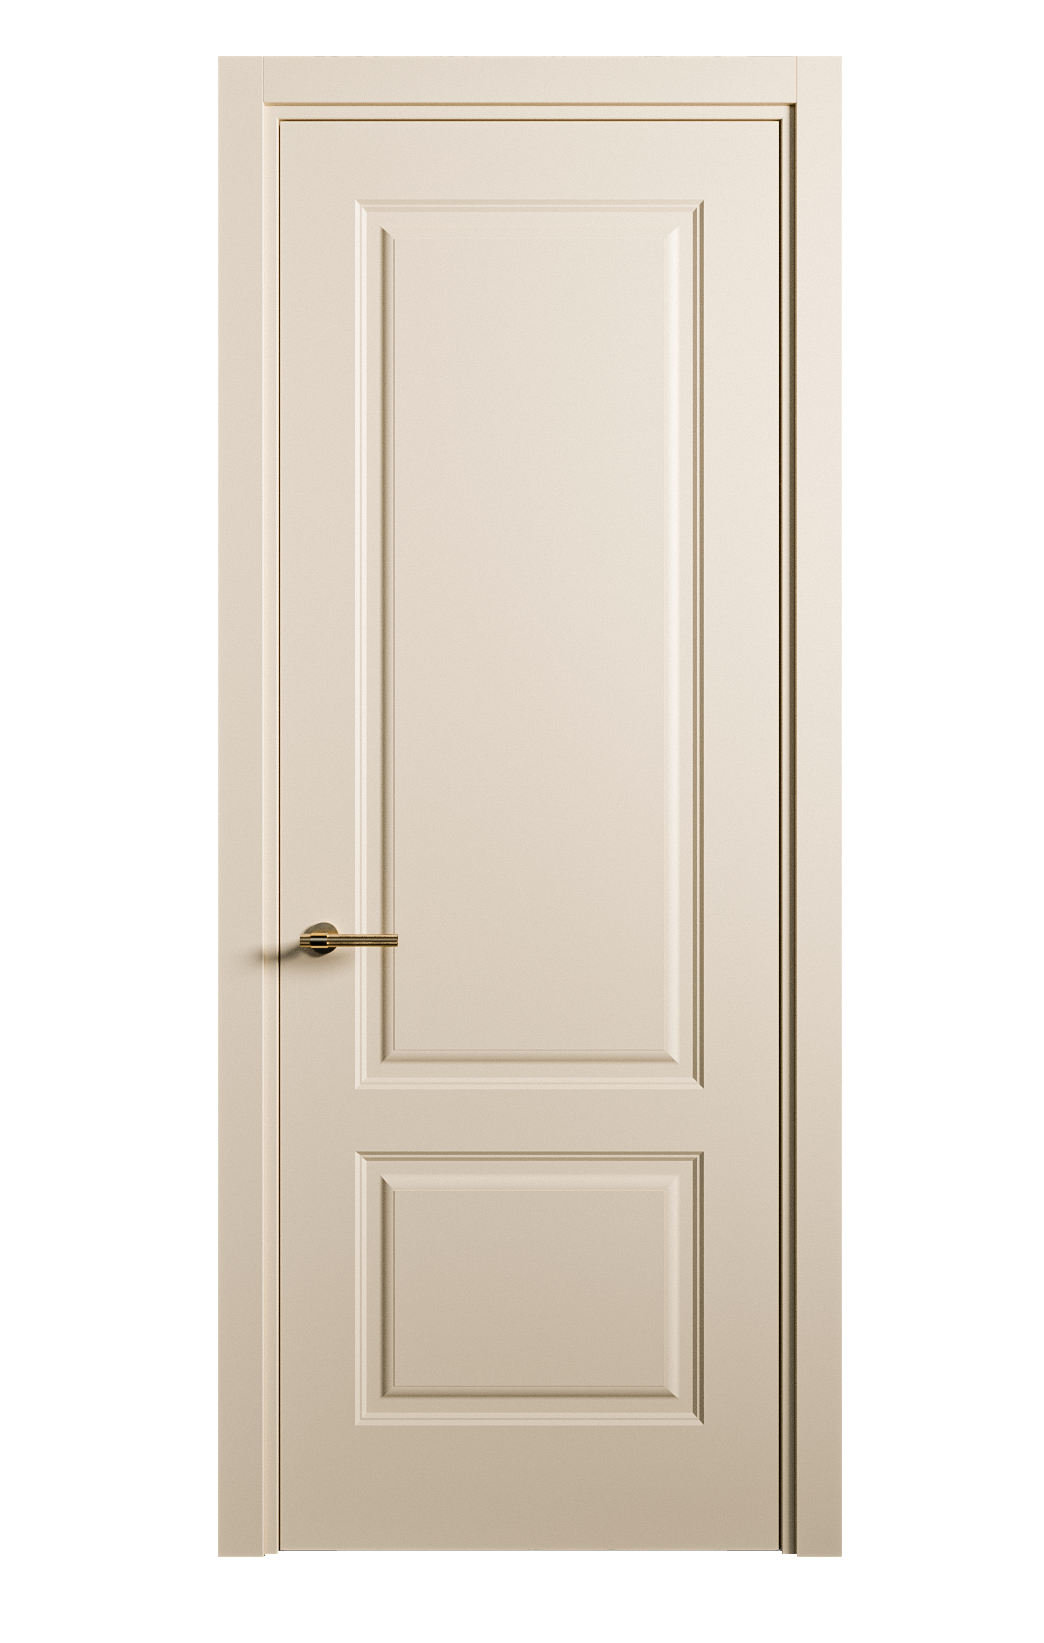 Межкомнатная дверь Вита-1 глухая эмаль ral 1015 26297